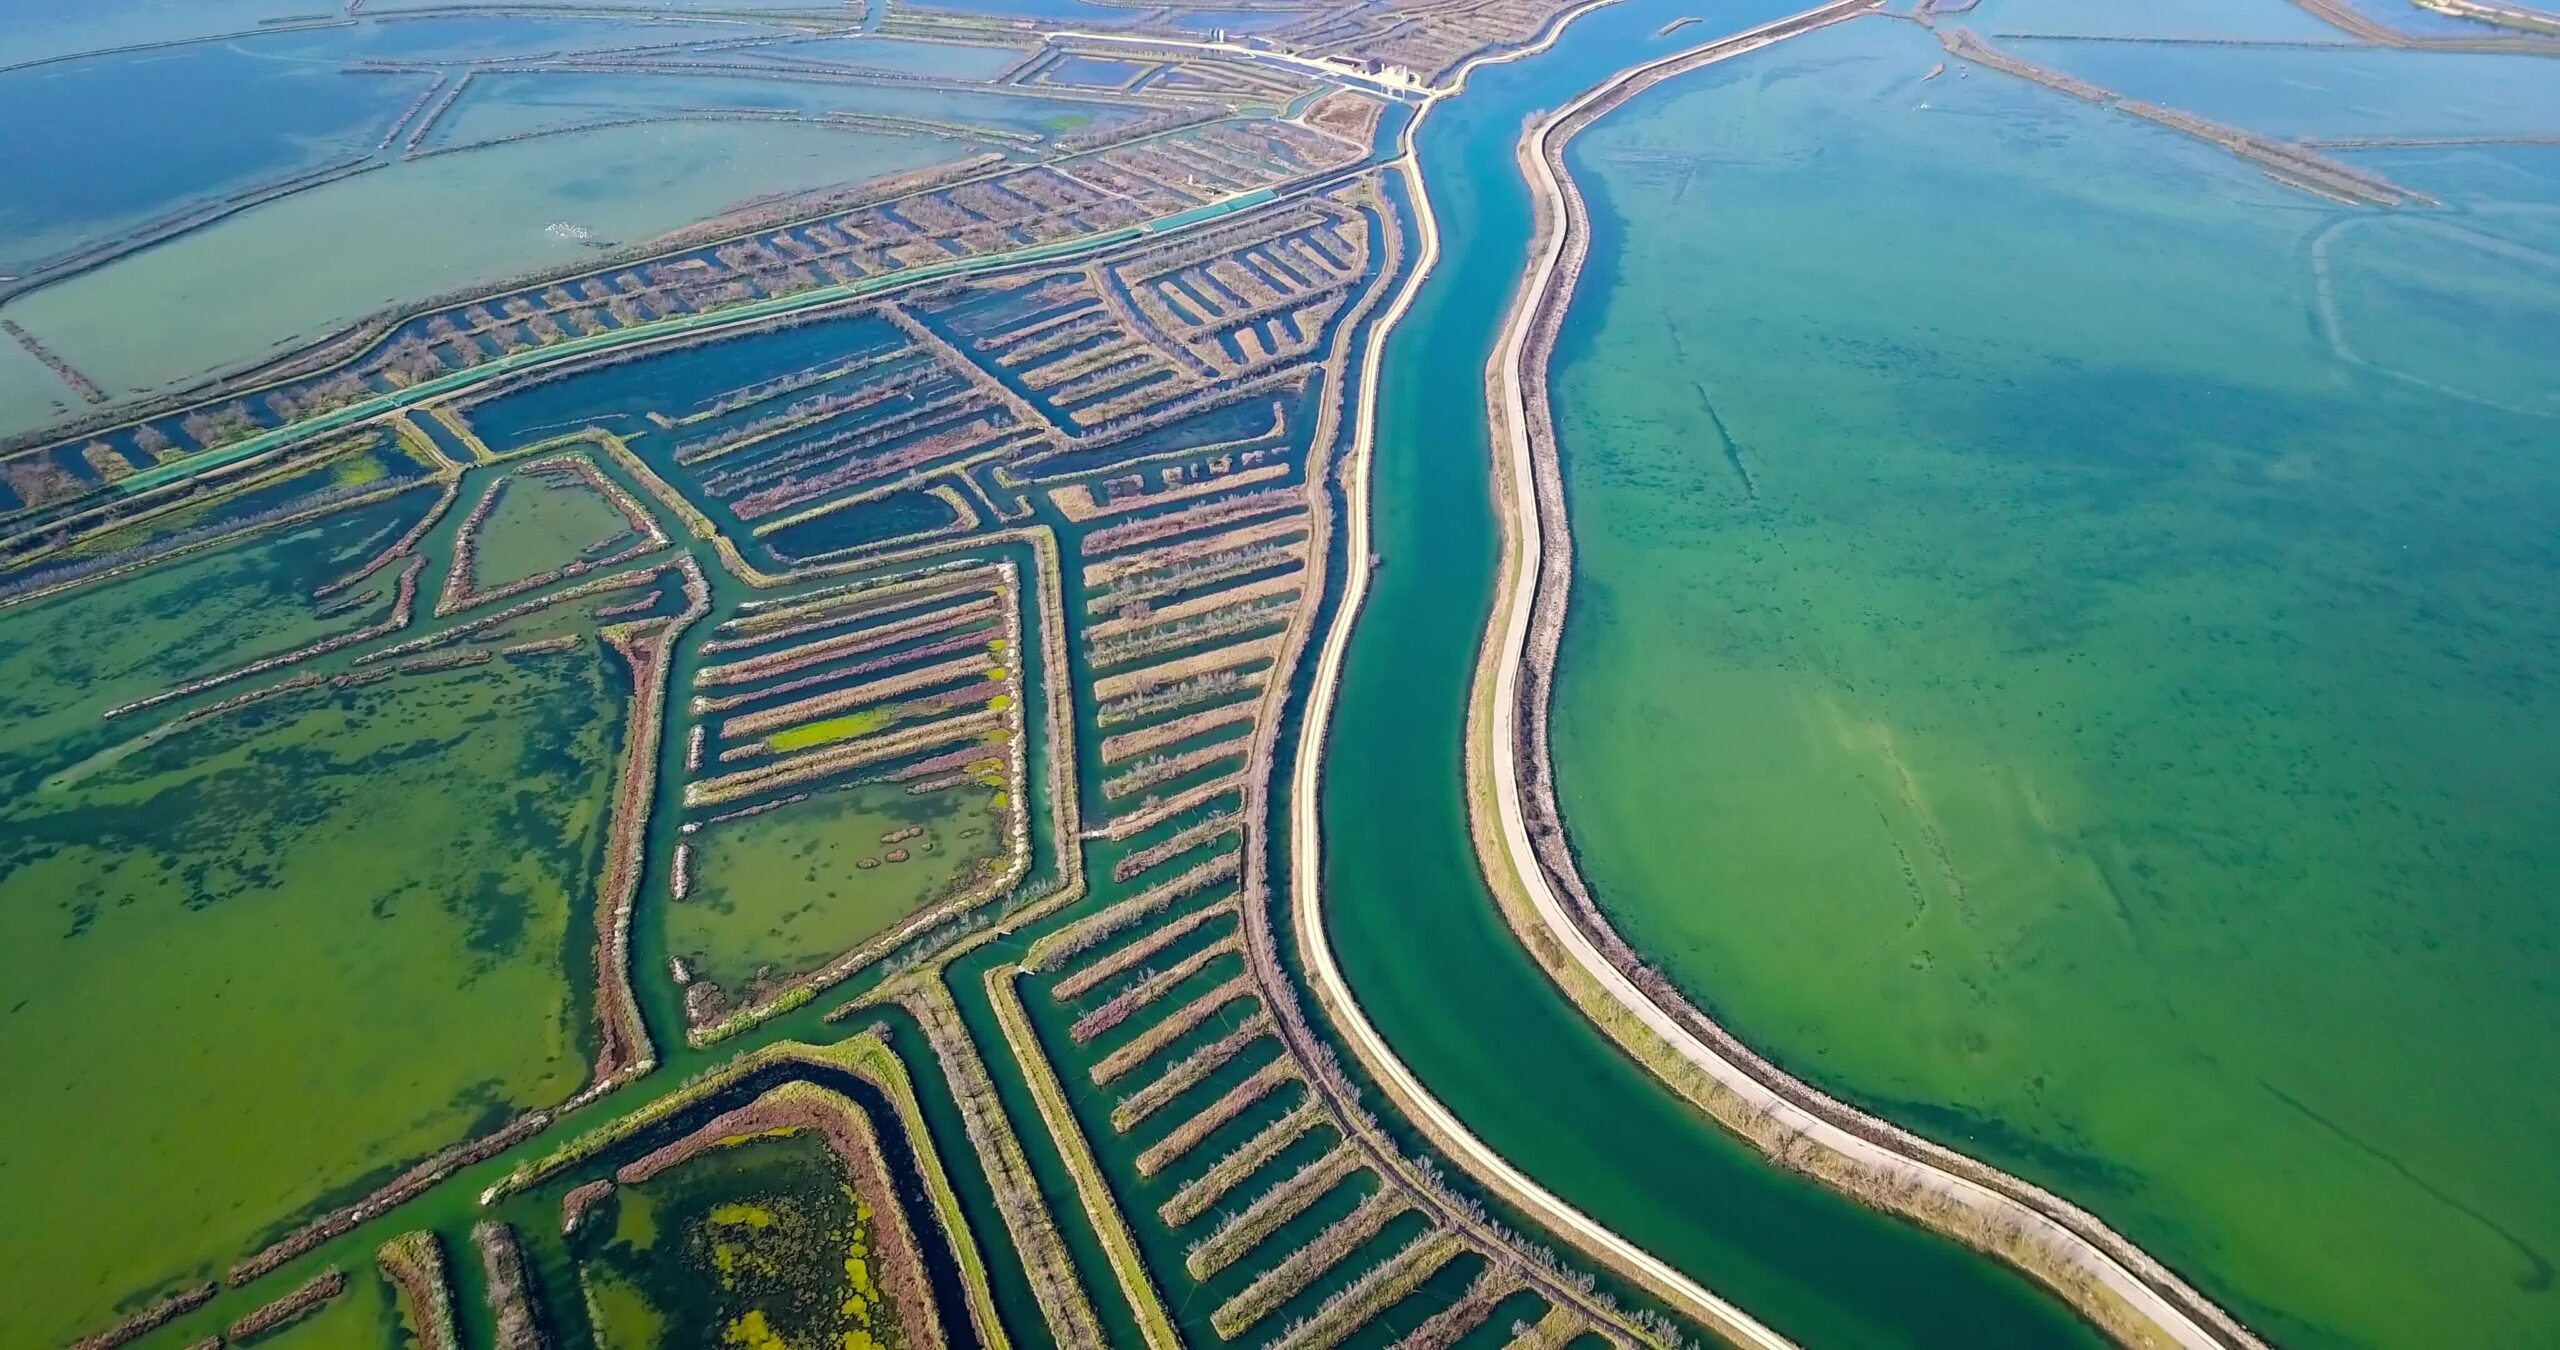 Strada lungo i canali orizzontali di Venezia con fioritura di acque algali